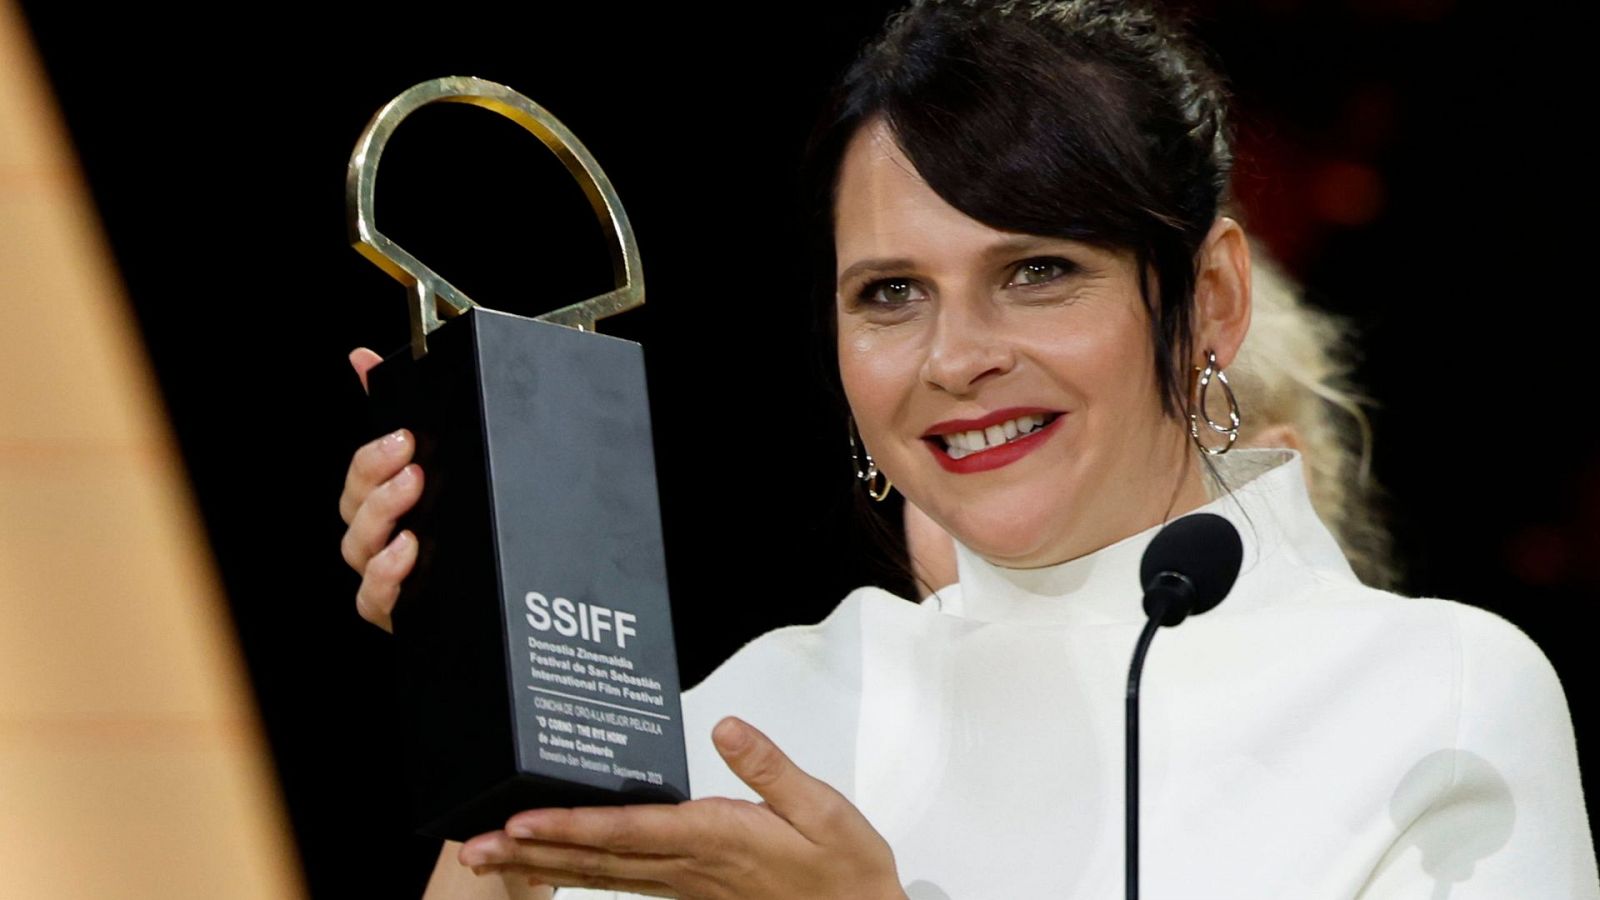 24 Horas Fin de semana - Jaione Camborda, primera directora española en ganar la Concha de Oro: "Es una oda a la vida" - Escuchar ahora